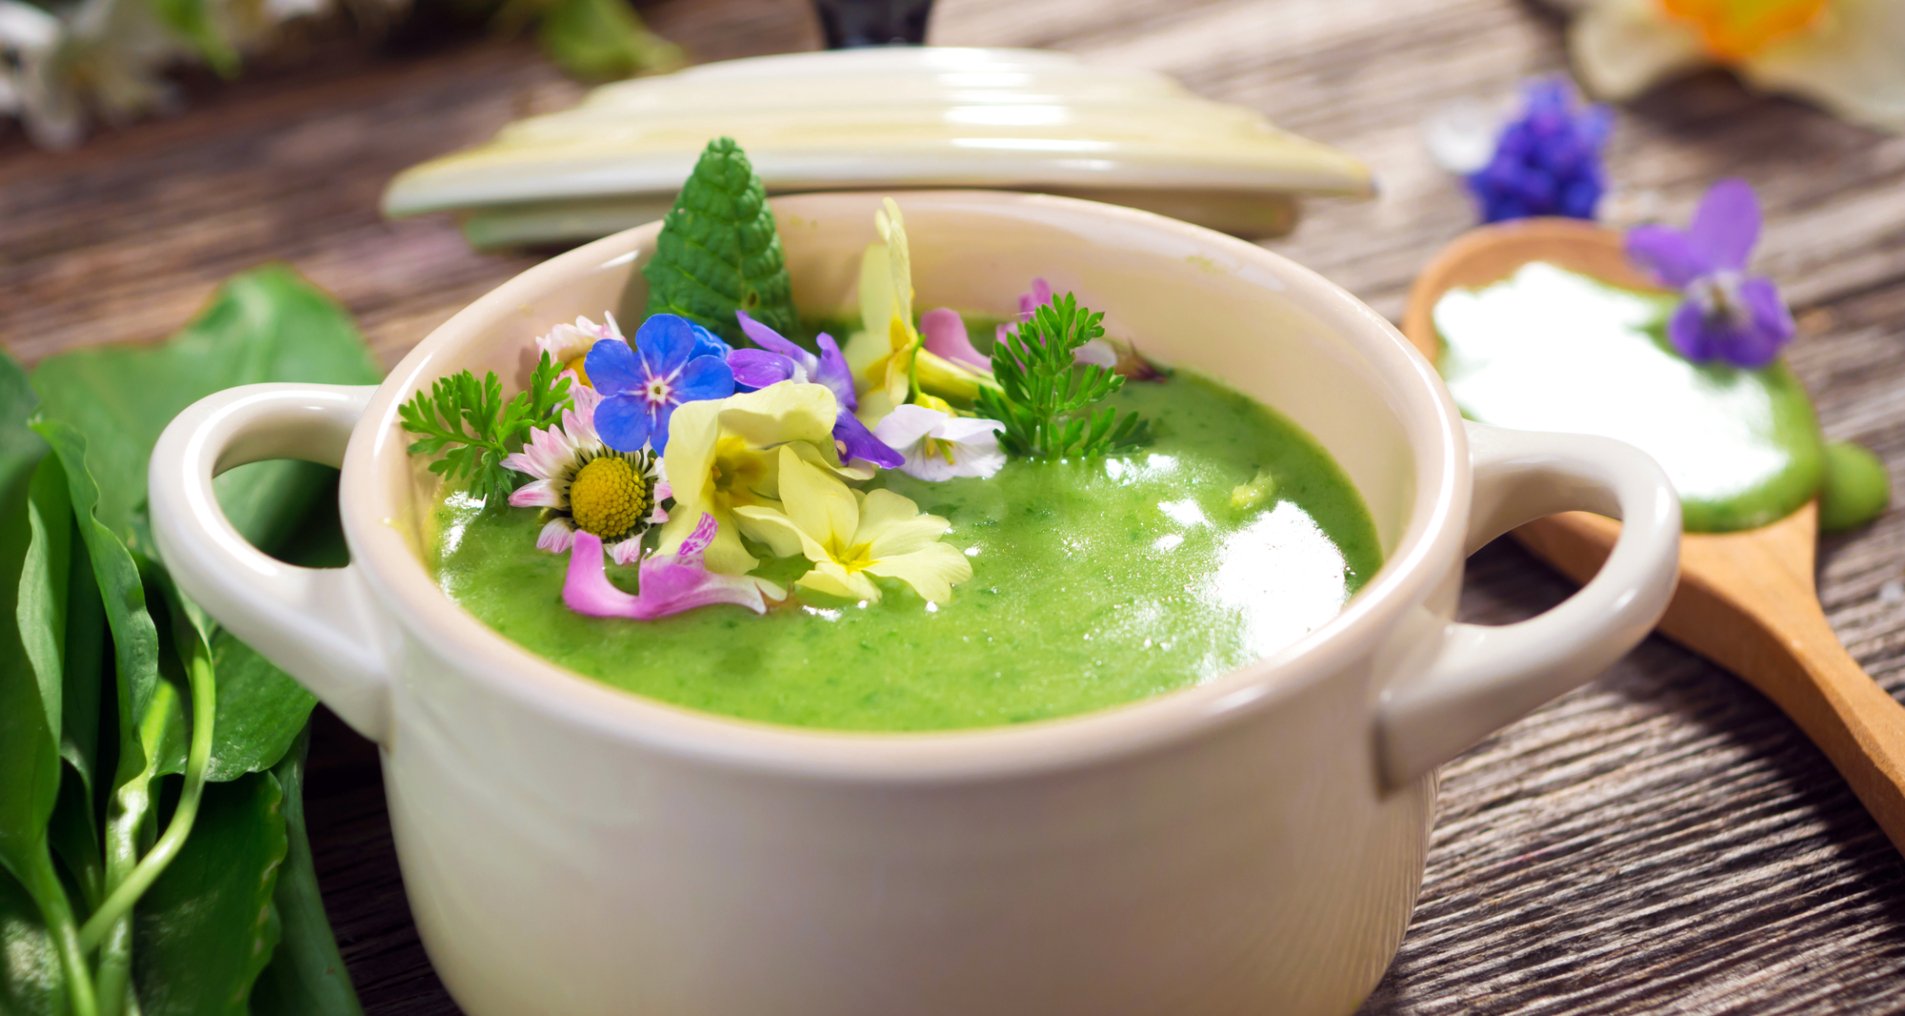 зеленый крем-суп